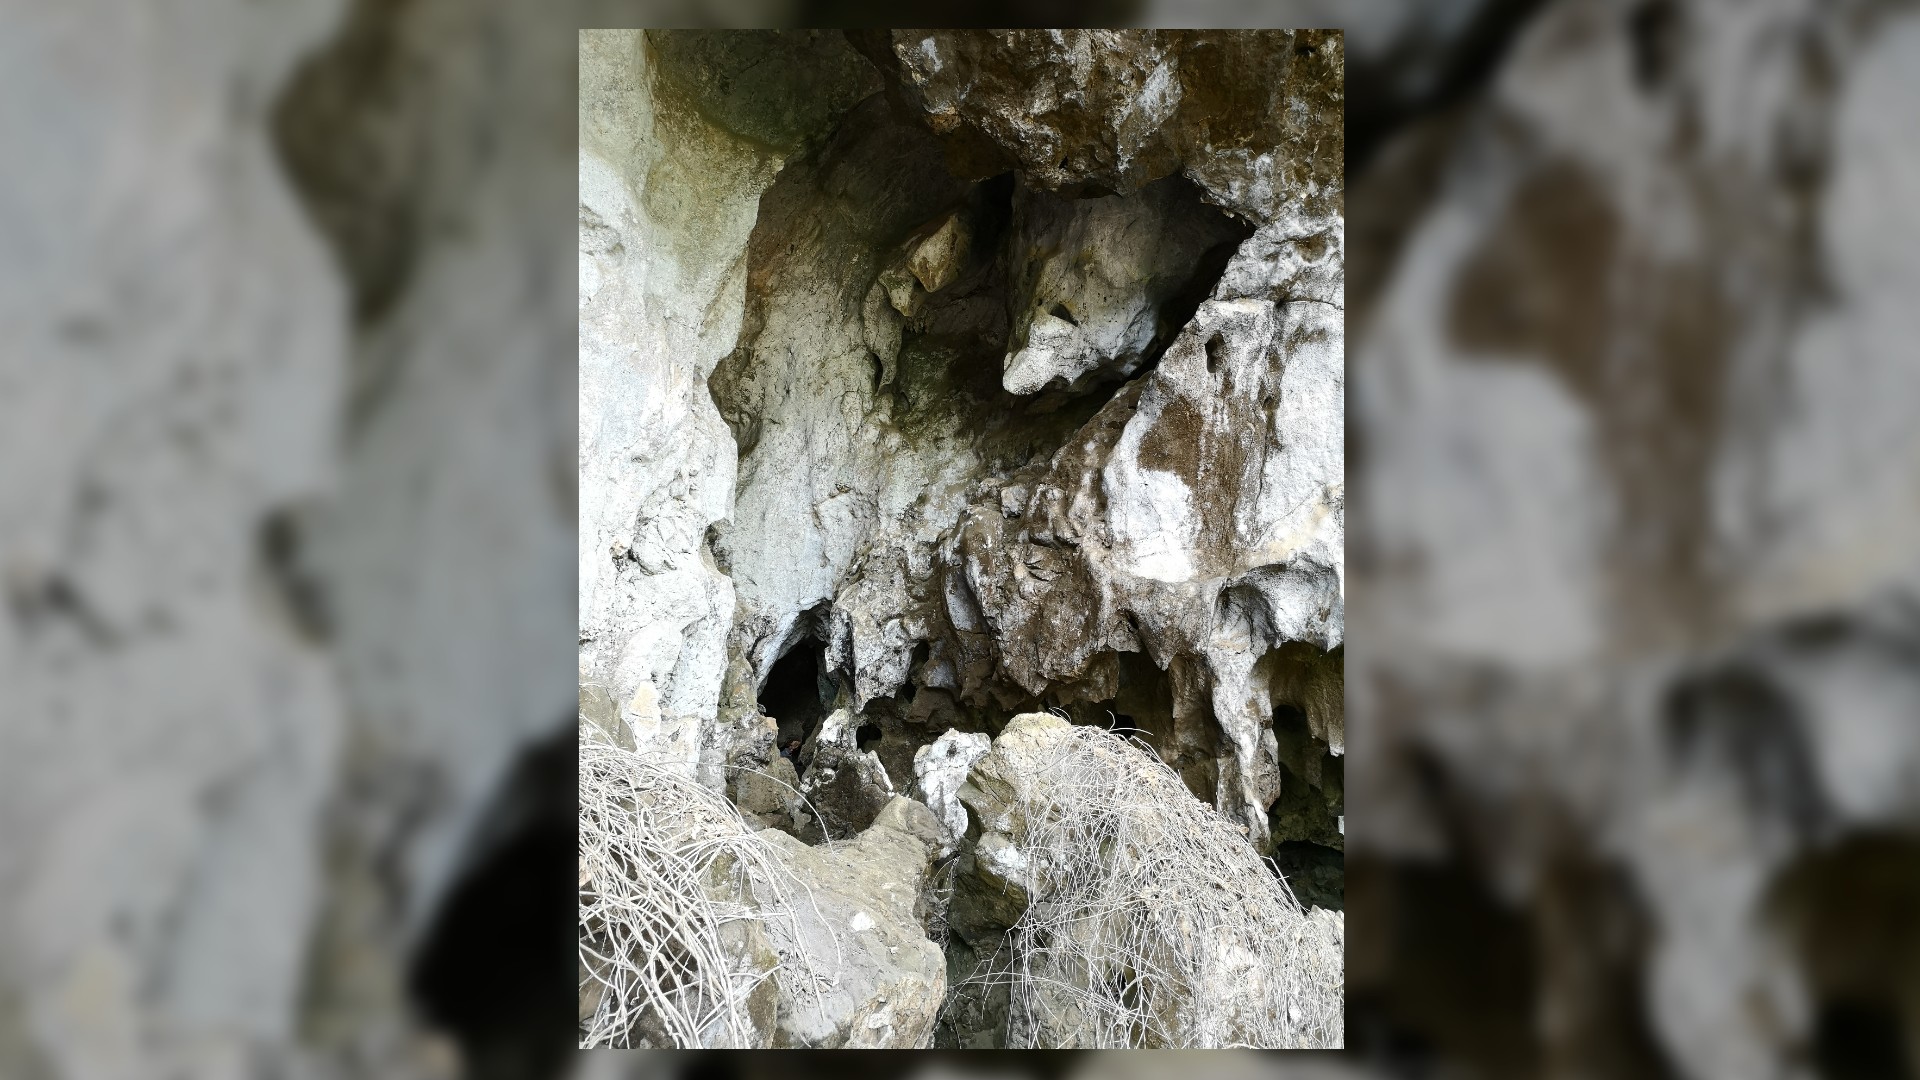 Ceci est une image de l'entrée de Cobra Cave au Laos.  C'est une grotte rocheuse et accidentée avec de nombreuses cachettes.  Au premier plan, il y a une poignée de longs brins de végétation blanche.